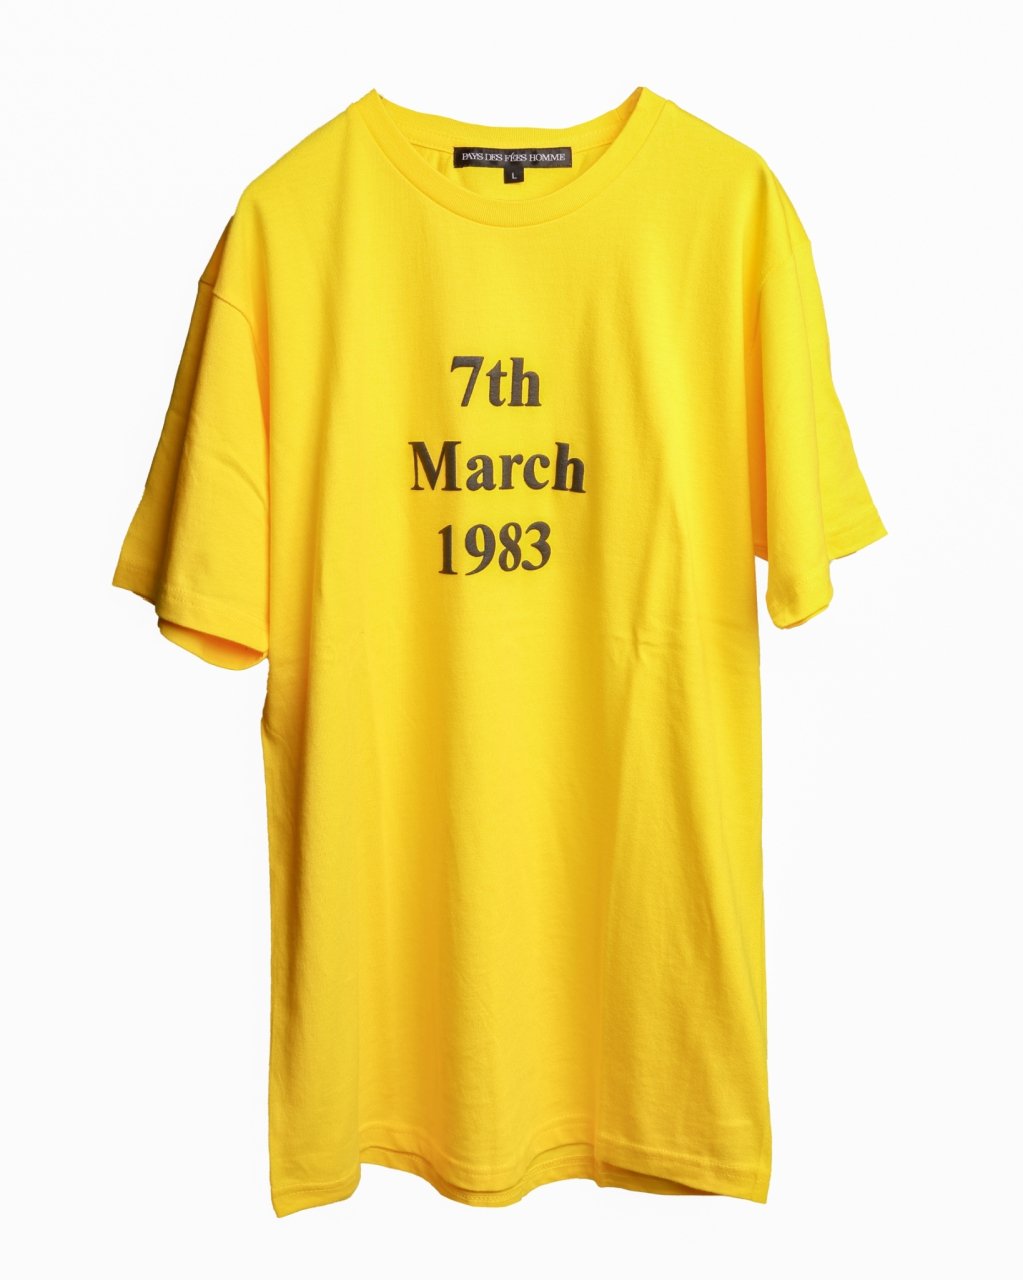 19830307 T shirt (yellow body)